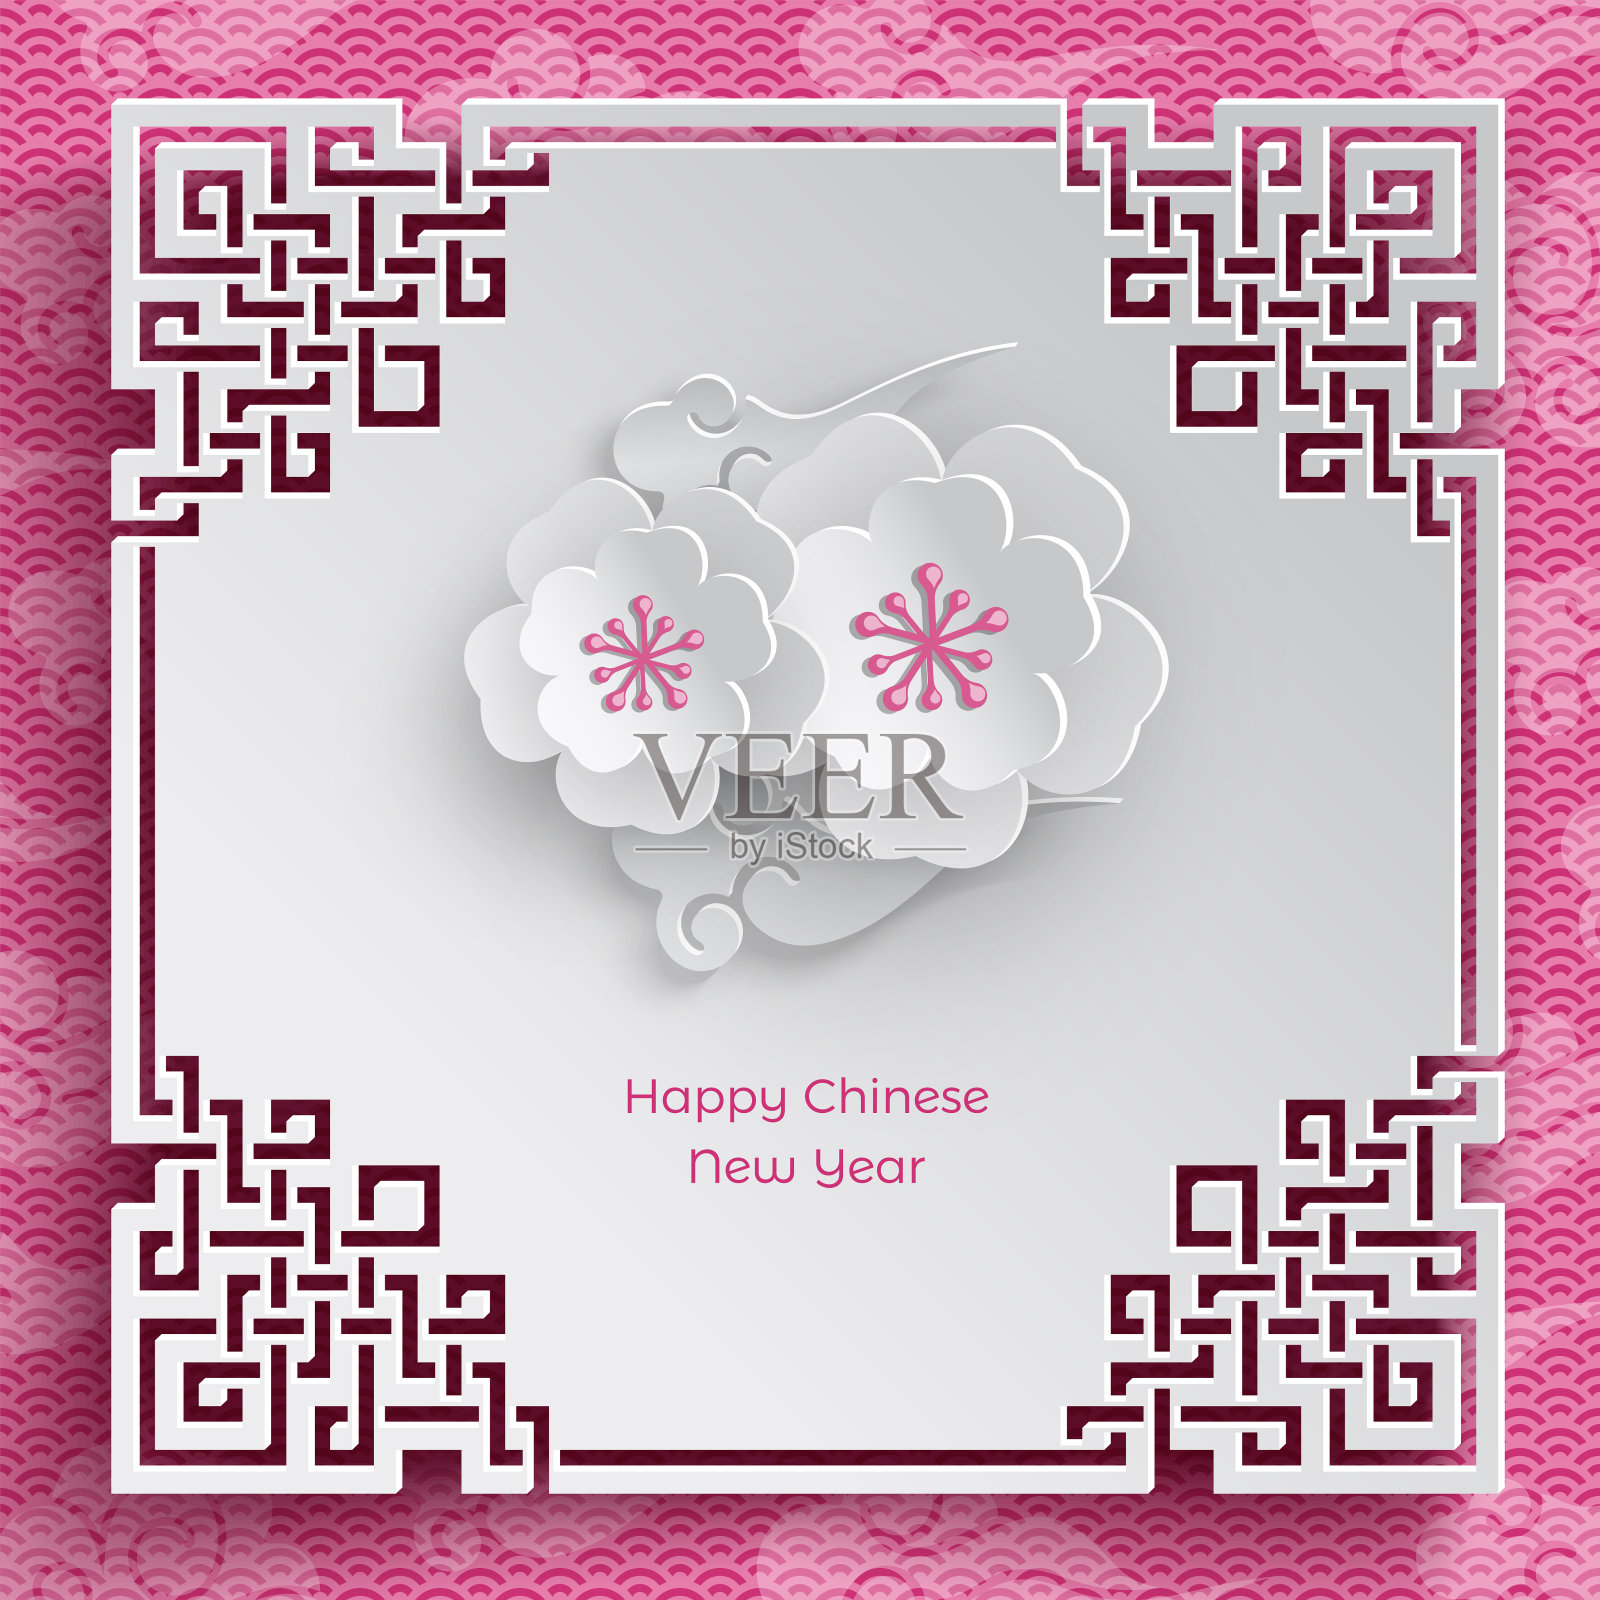 东方框架与两樱花在粉红色的图案背景为中国新年贺卡，剪纸风格。矢量，说明中国新年设计模板素材